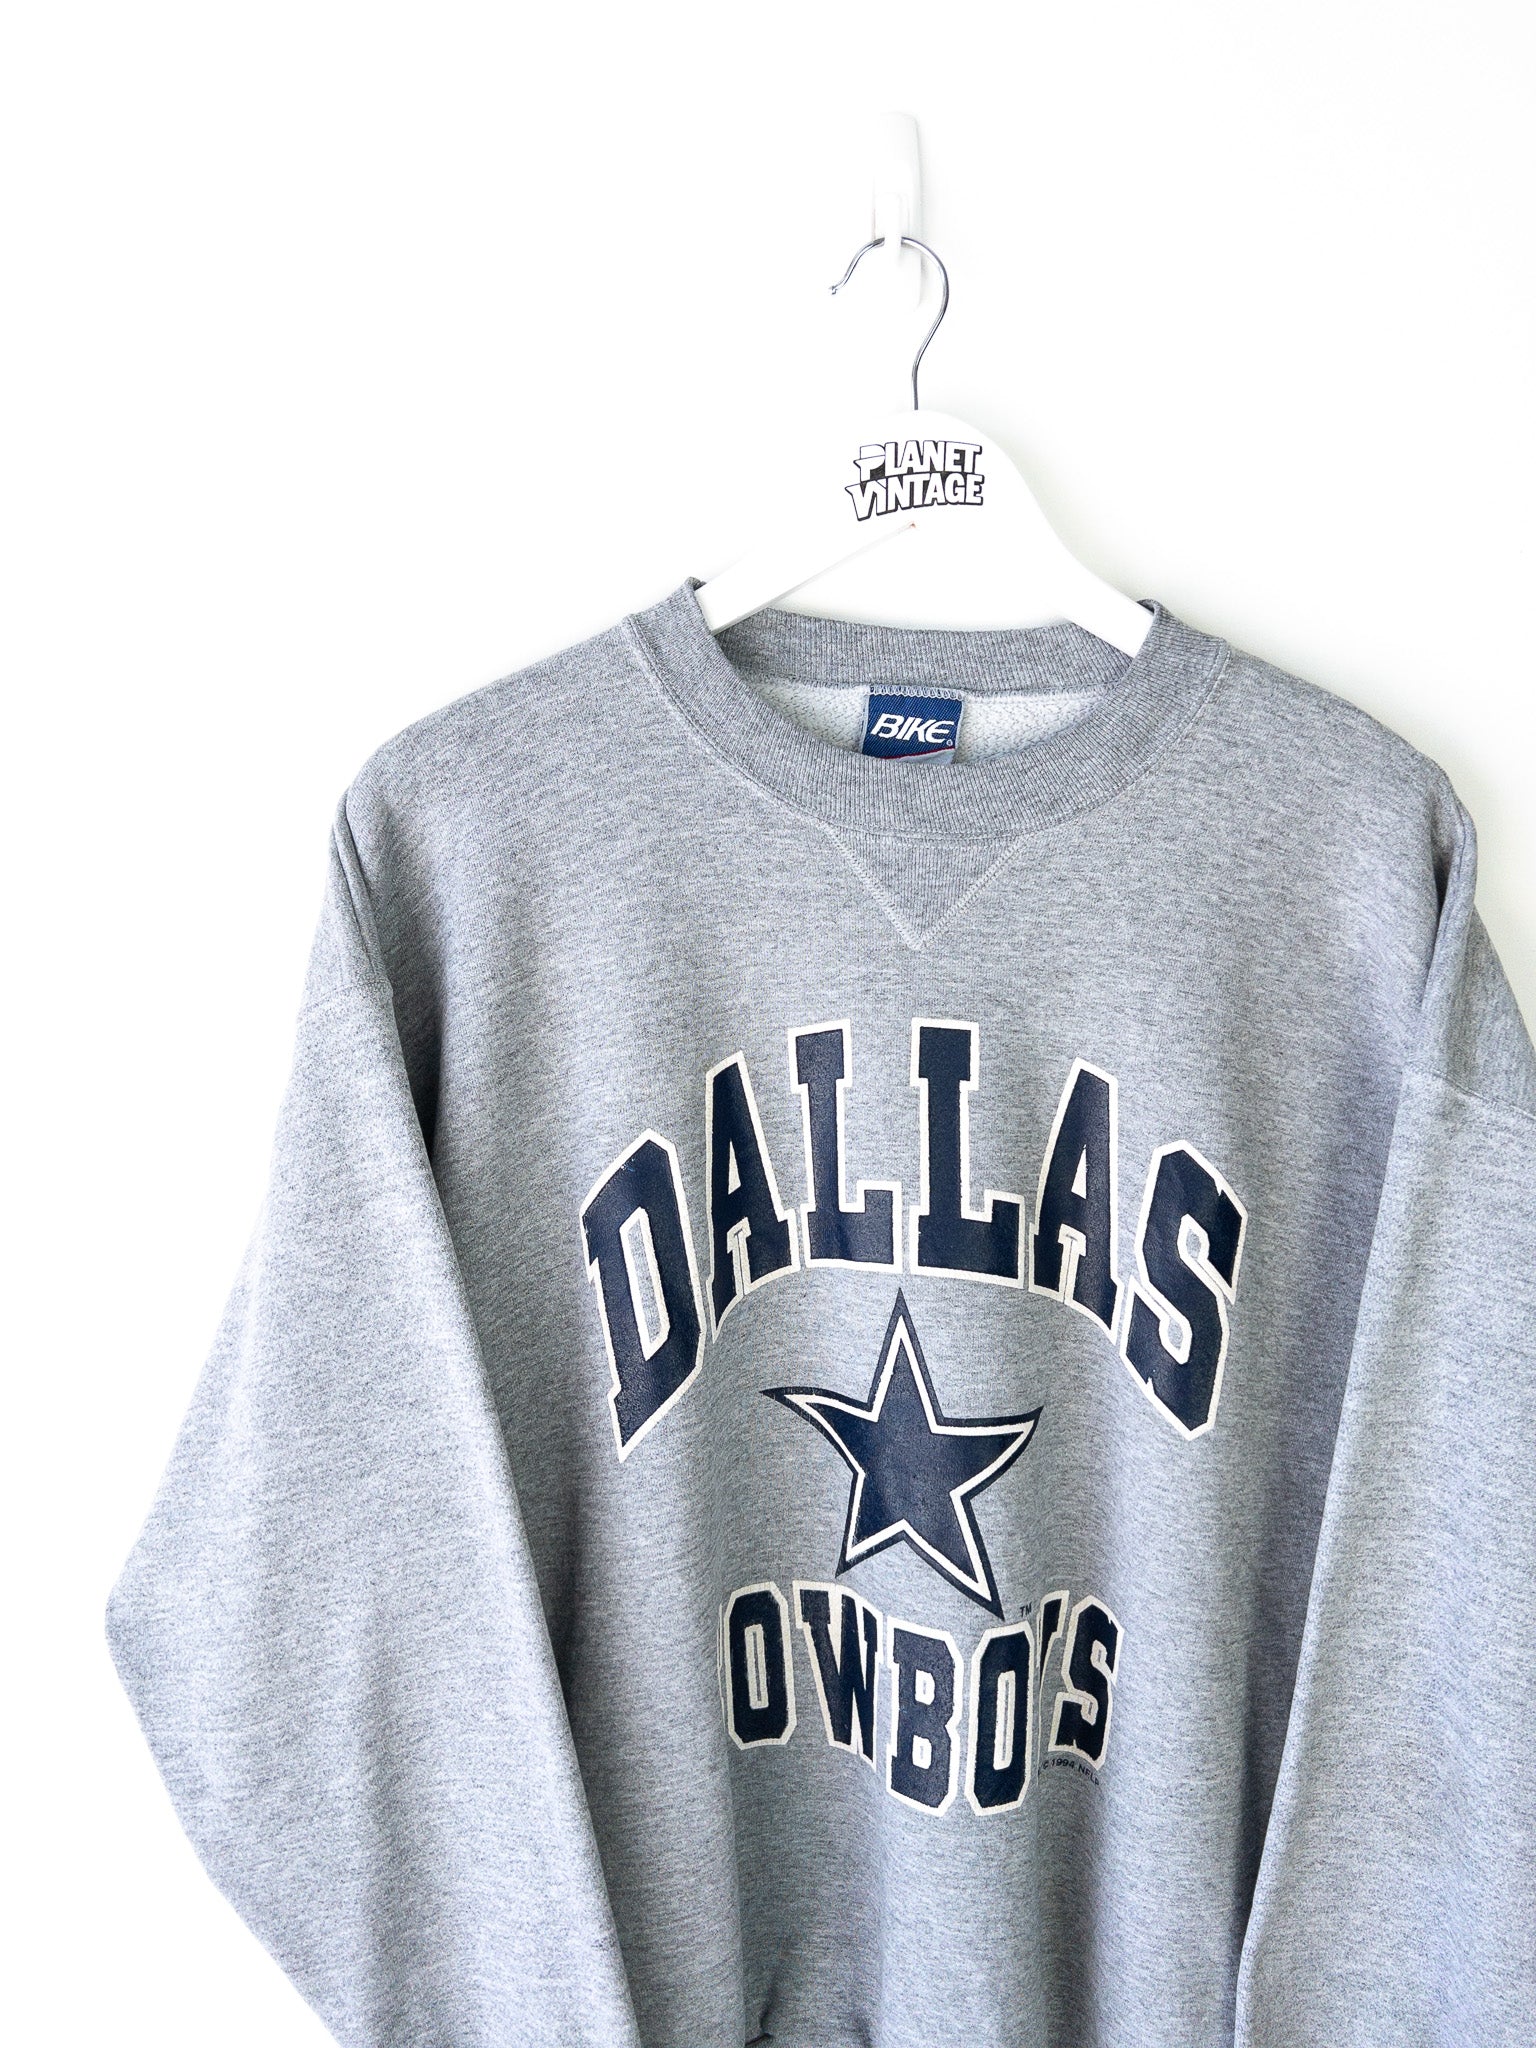 Vintage Dallas Cowboys 1994 Sweatshirt (XL)